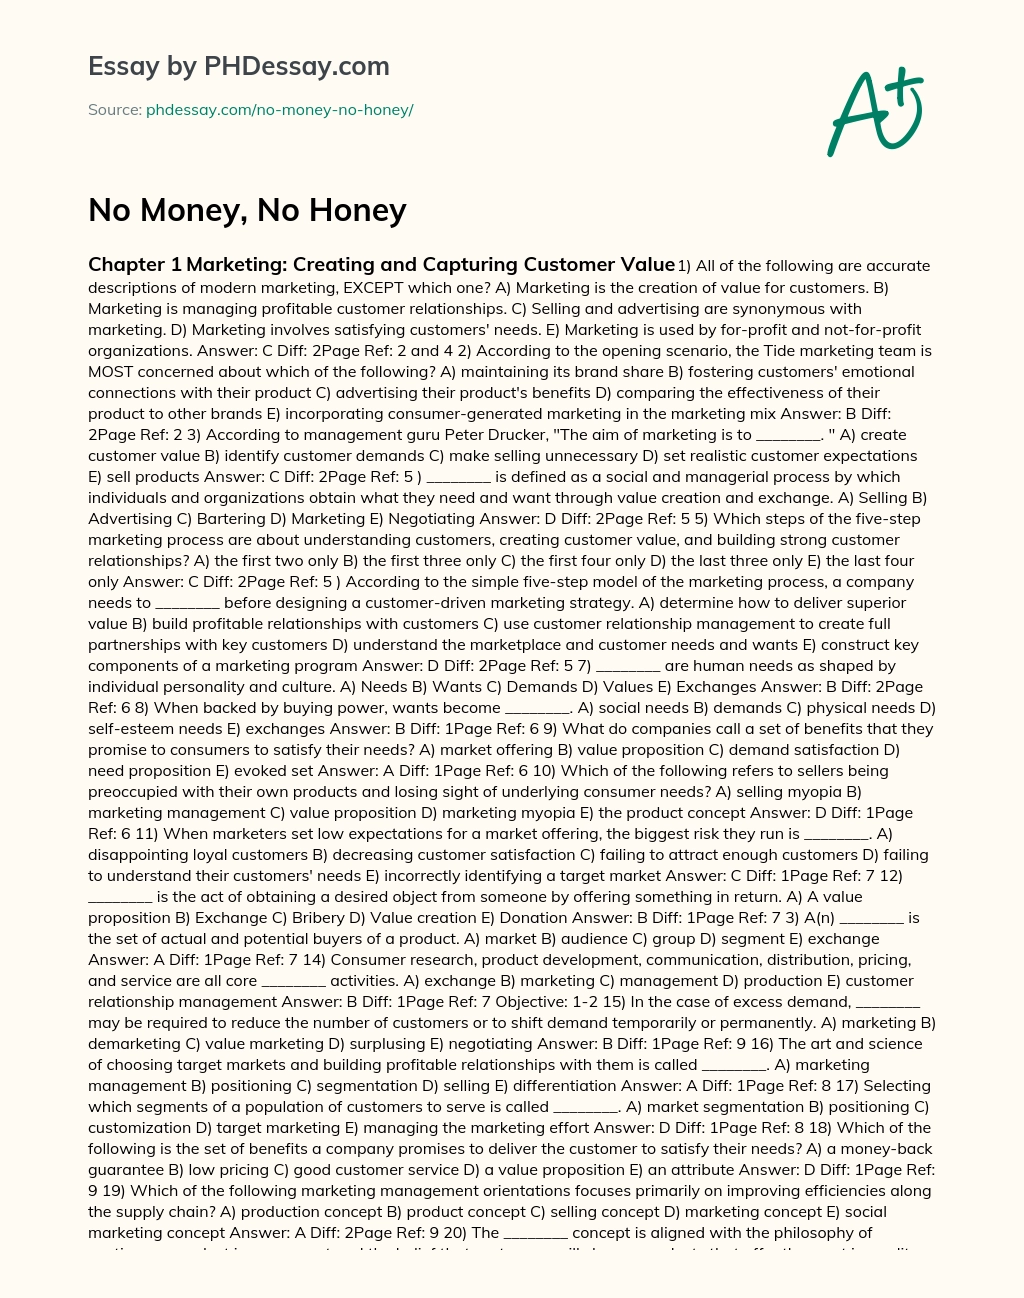 No Money, No Honey essay